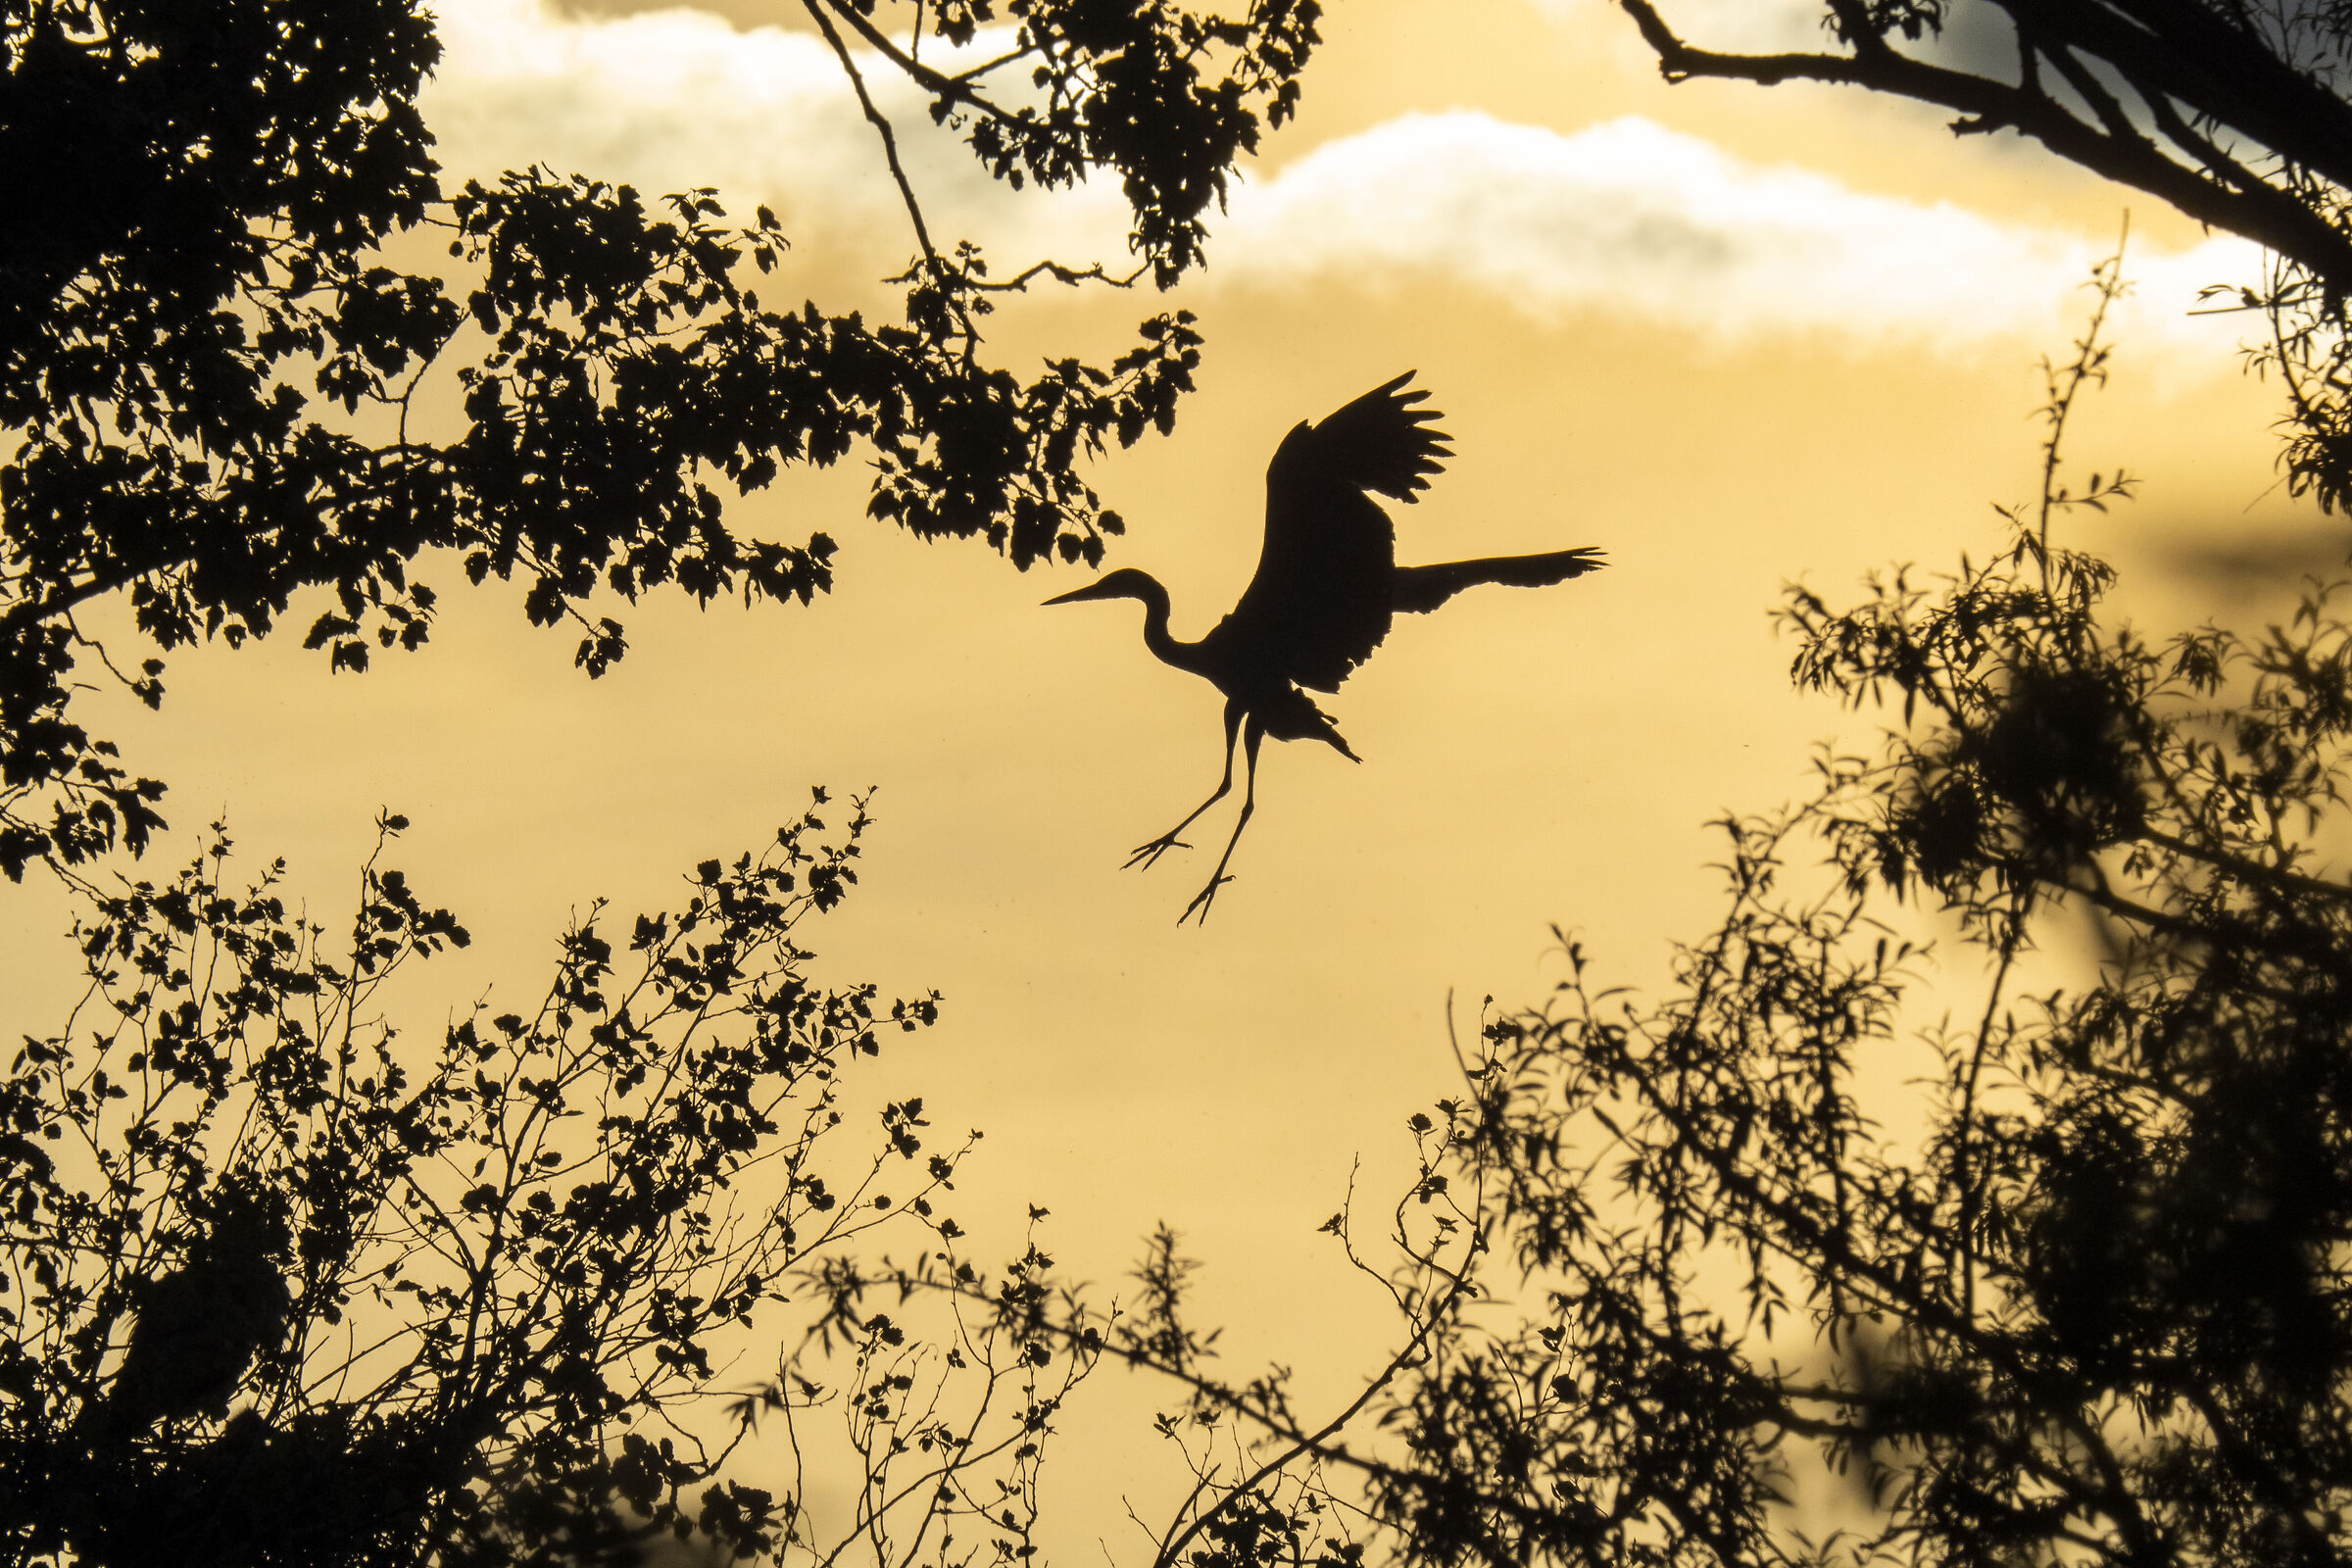 Gray heron at sunset ...